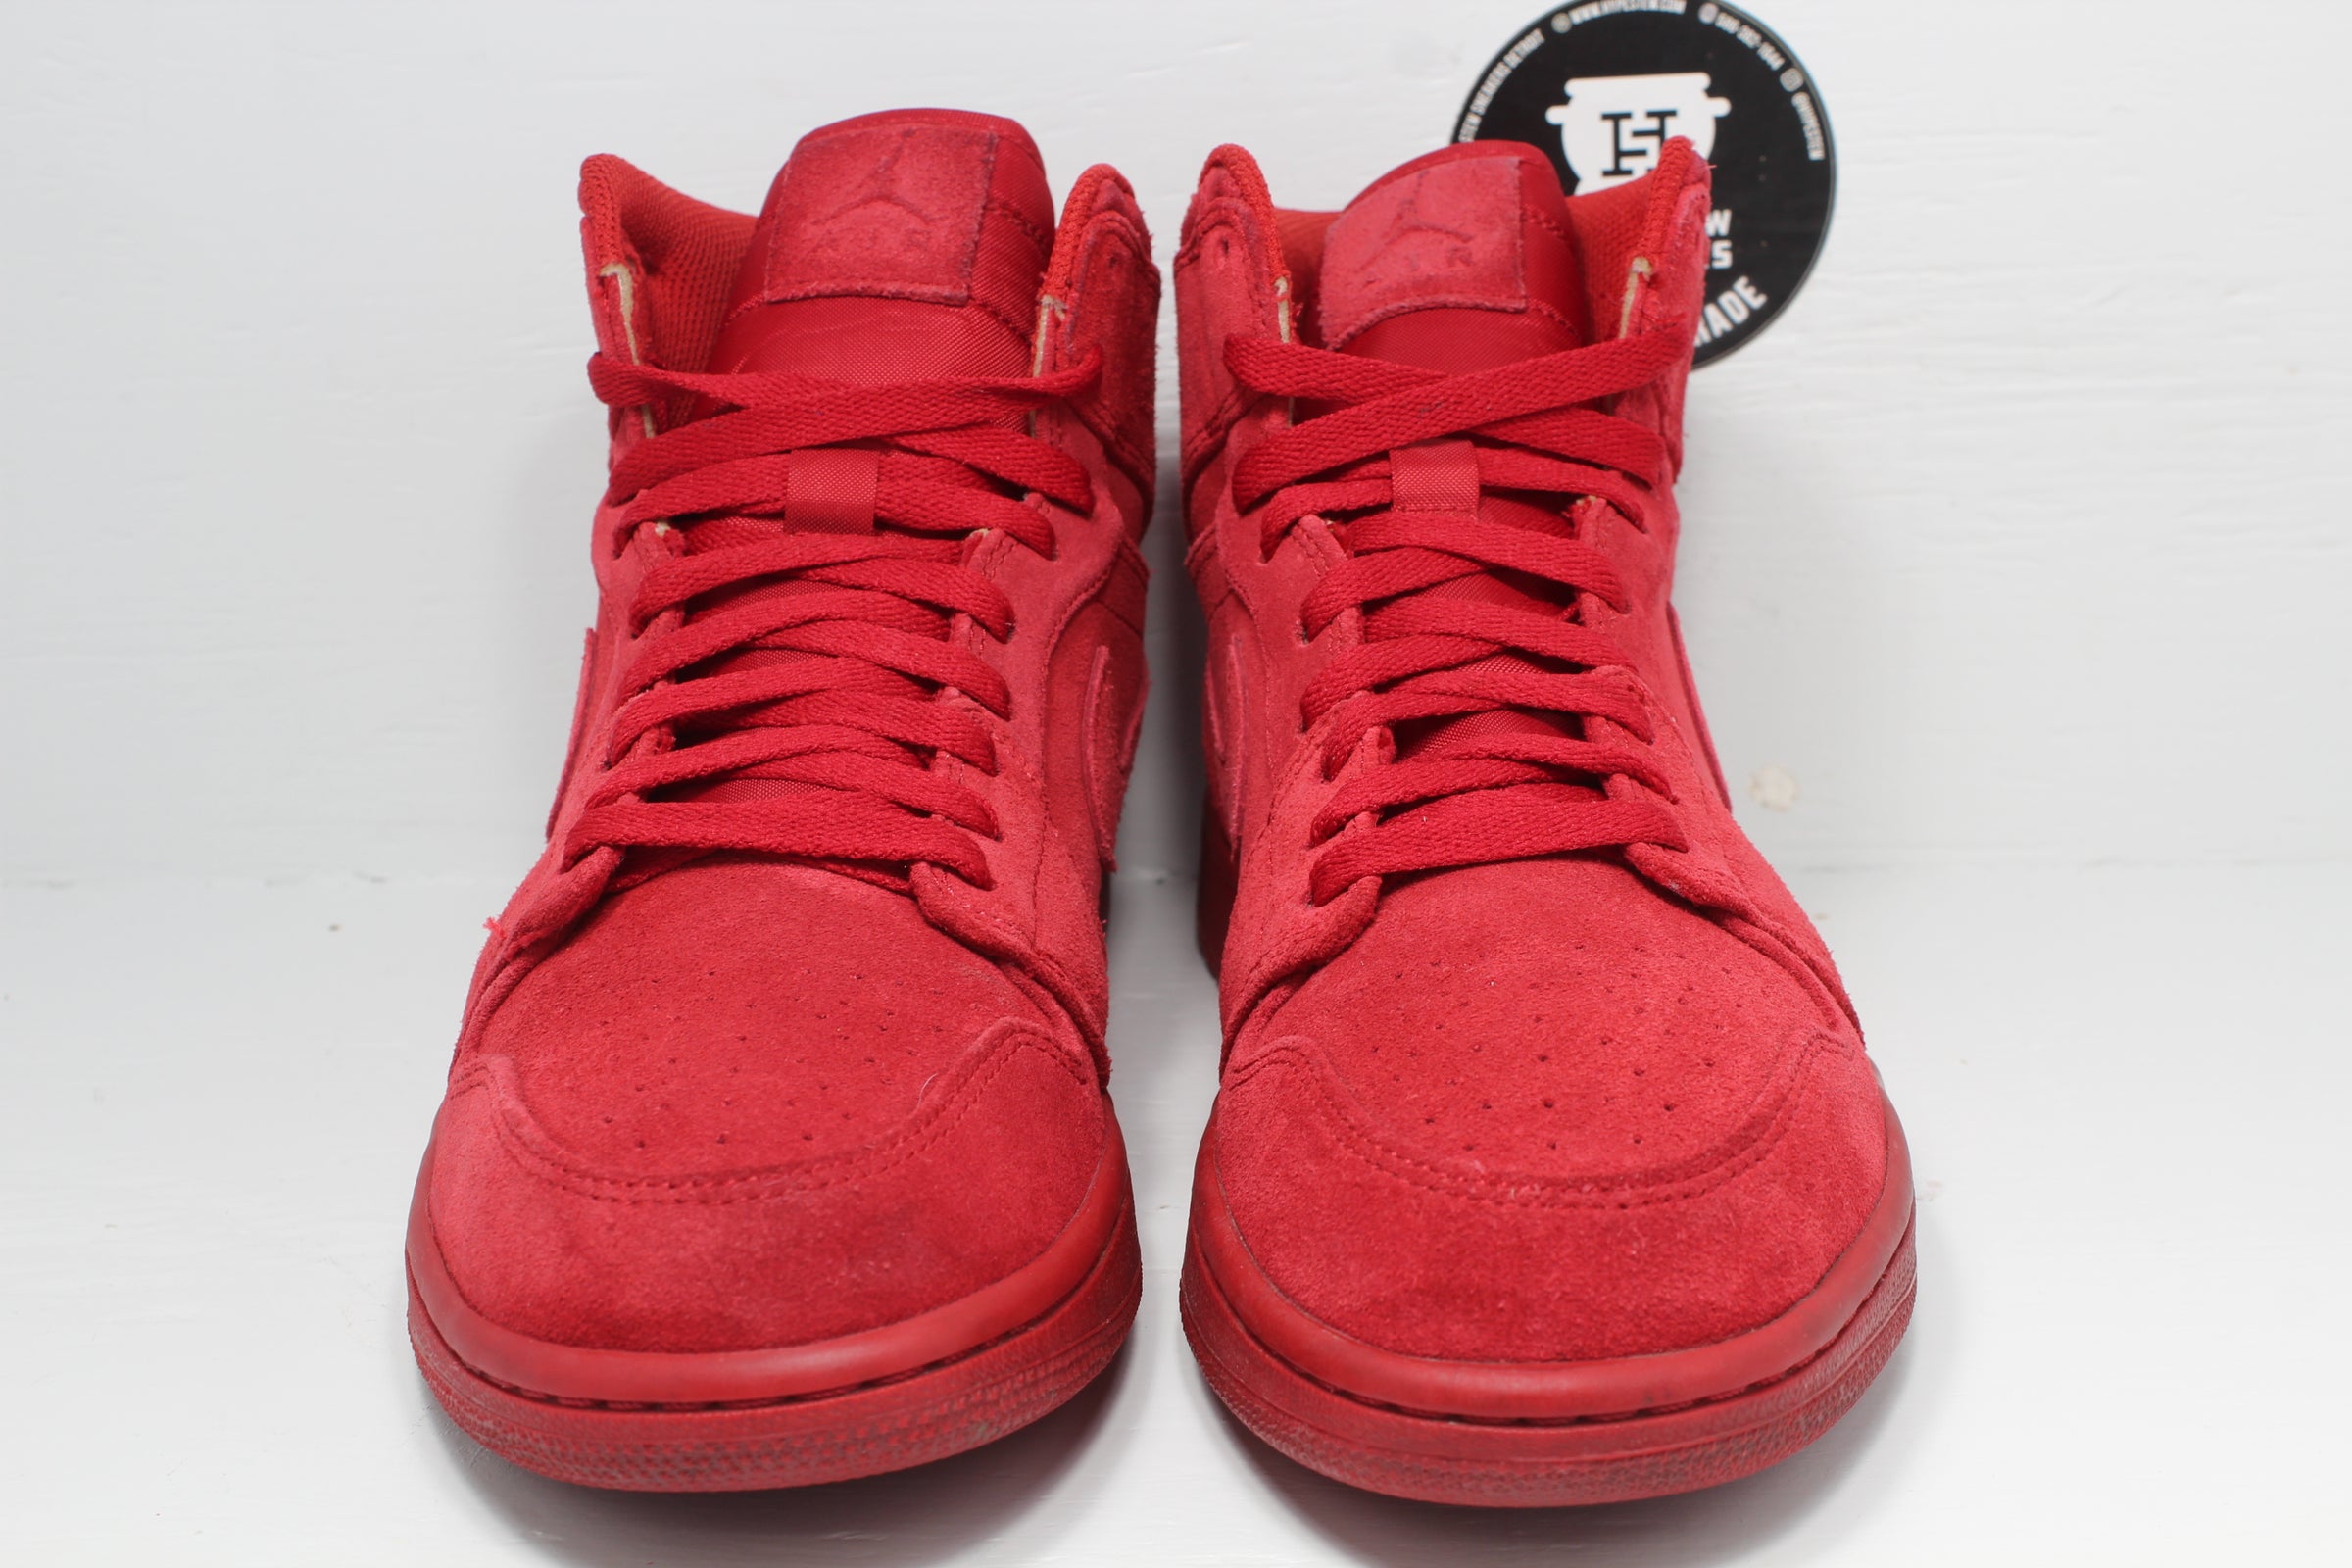 utilsigtet hændelse Pastor Dårligt humør Nike Air Jordan 1 High Red Suede | Hype Stew Sneakers Detroit